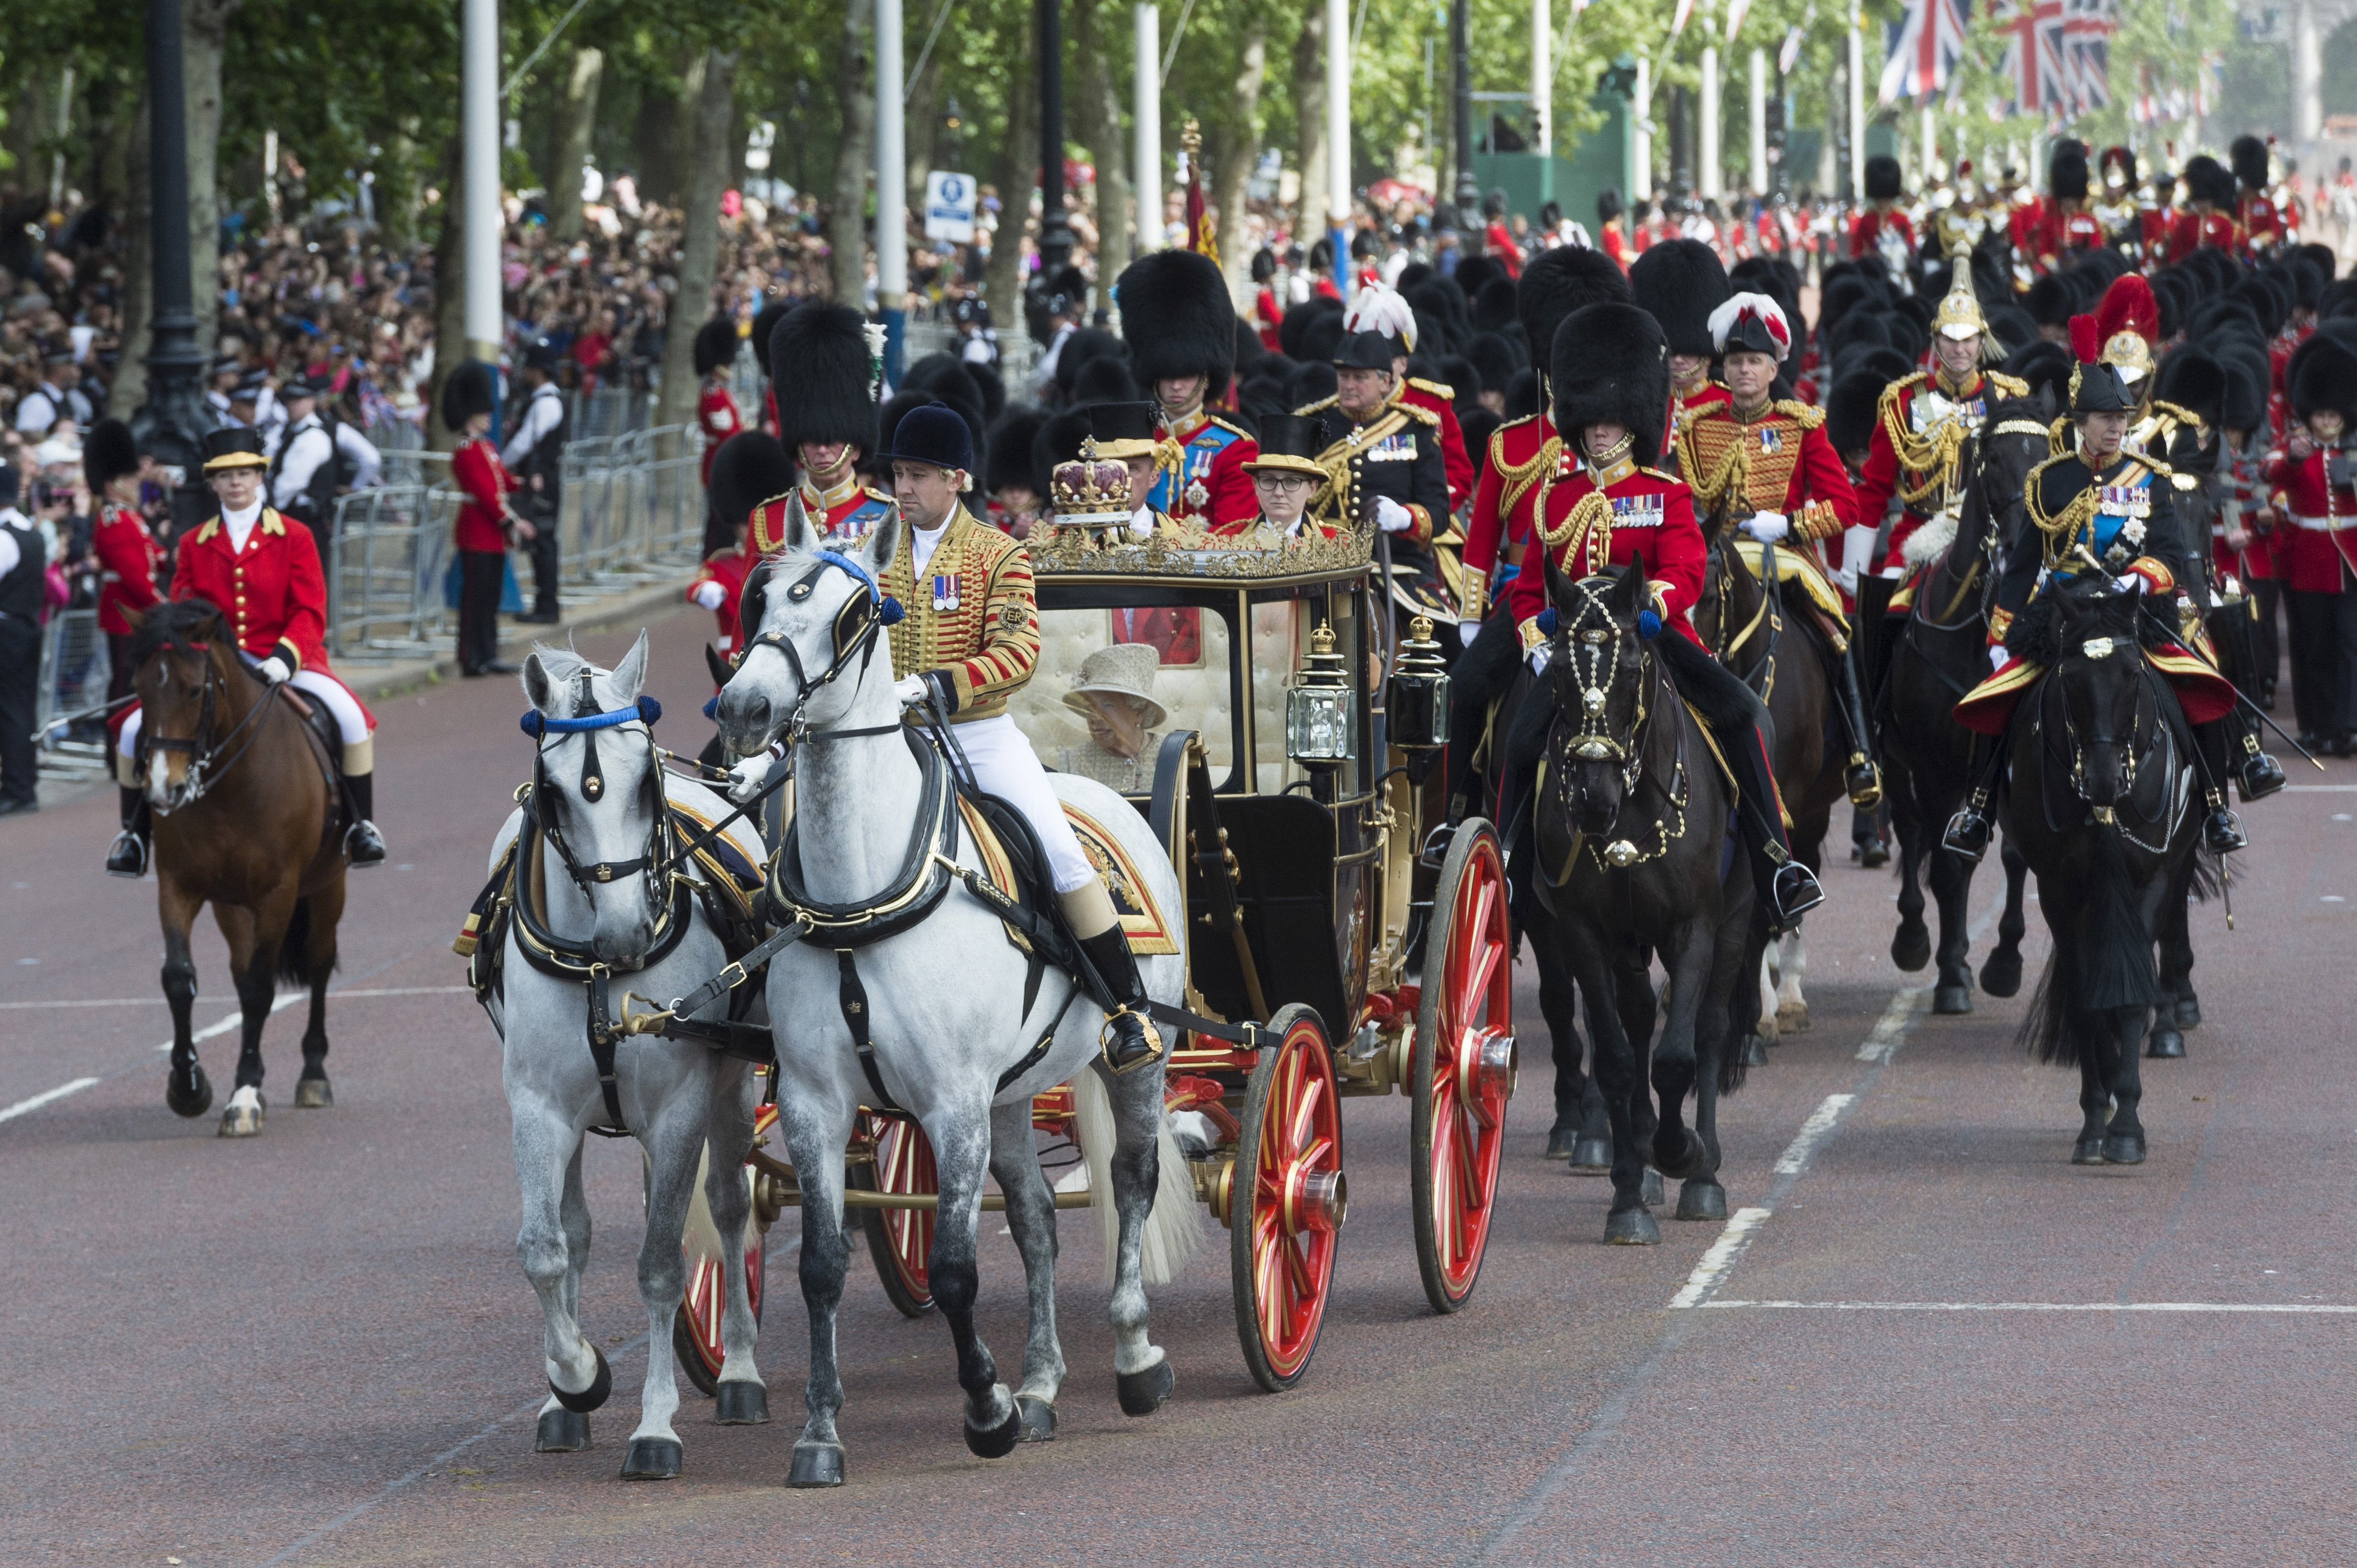 6月8日,在英国伦敦,英女王伊丽莎白二世乘马车返回白金汉宫